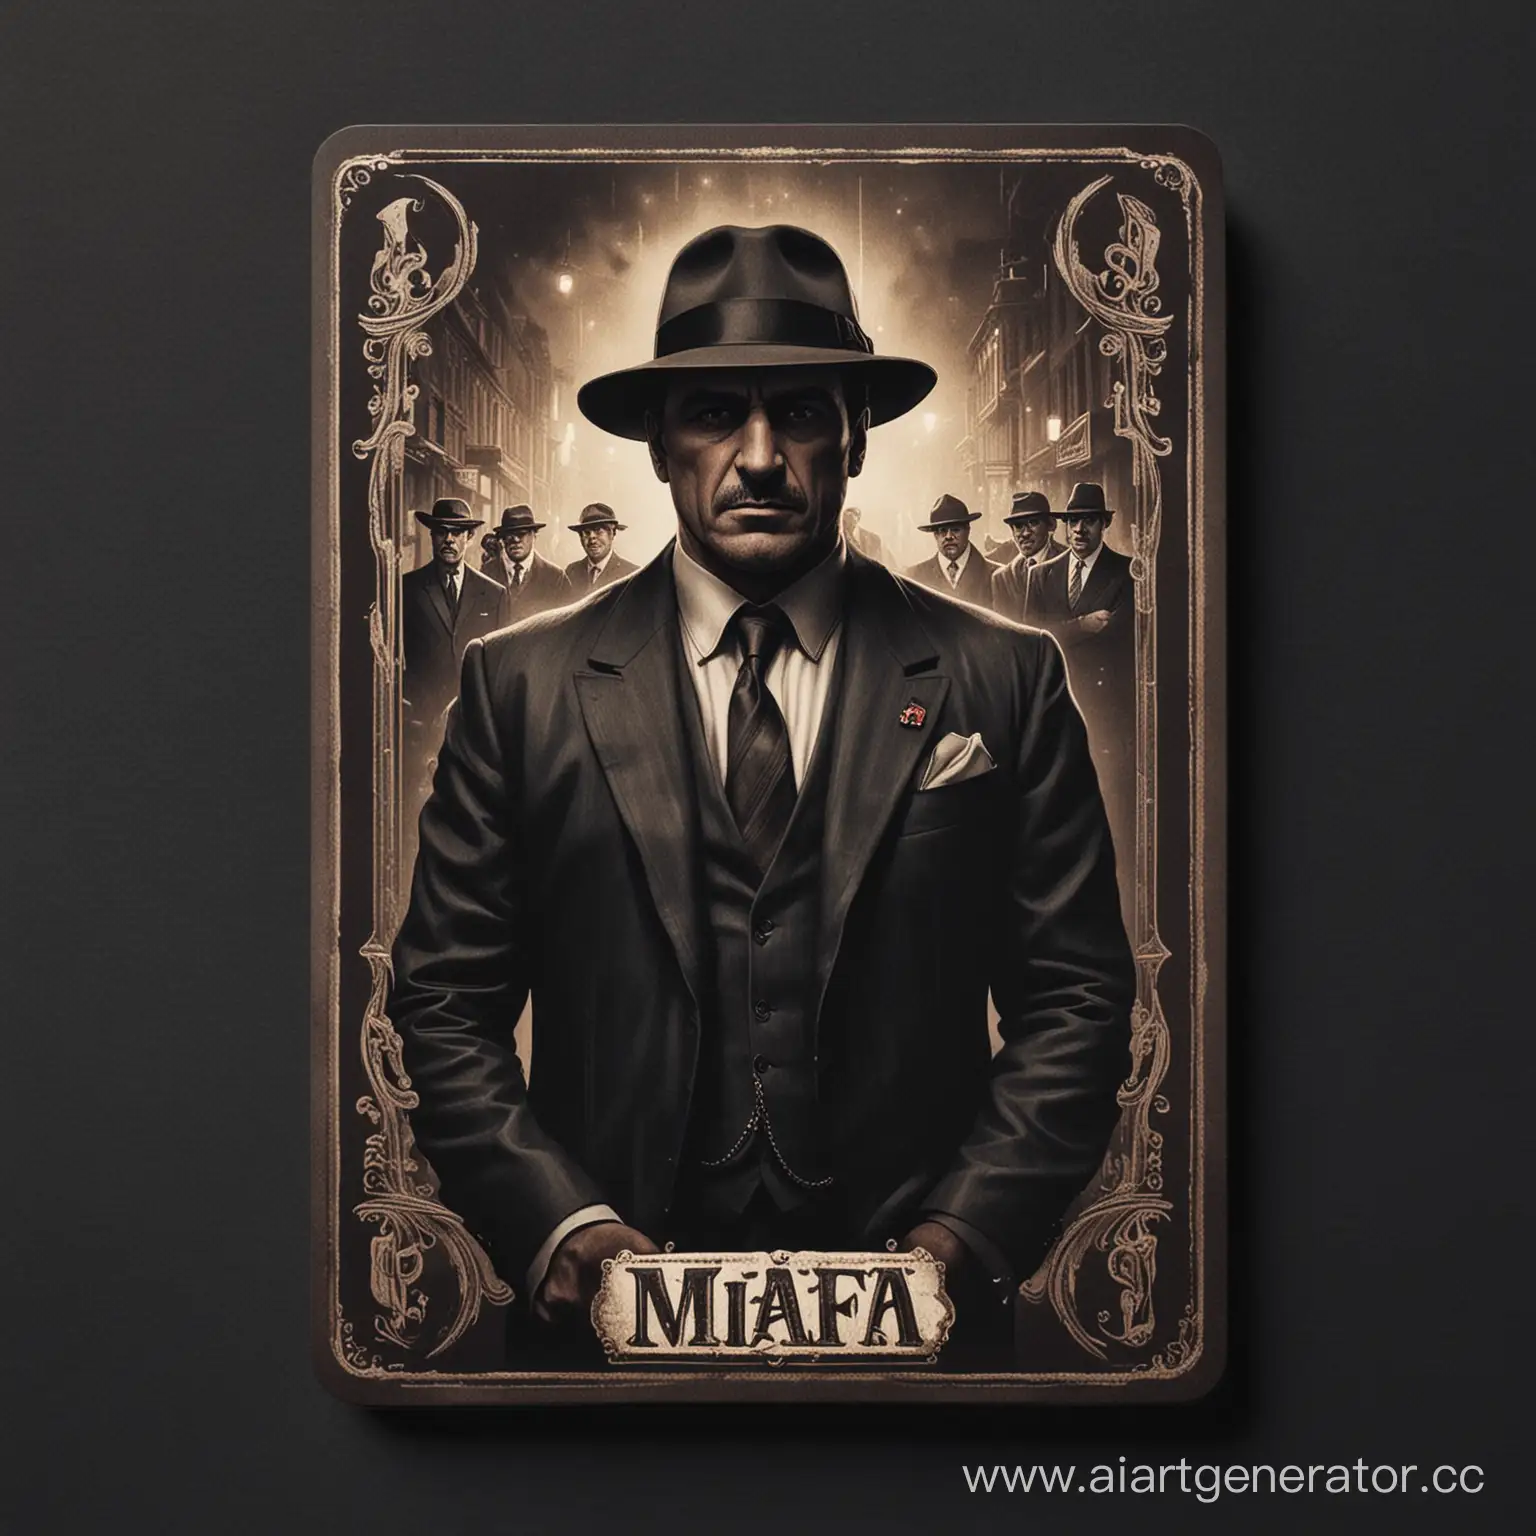 Карточка настольной игры с изображением главы мафии, в тёмных тонах